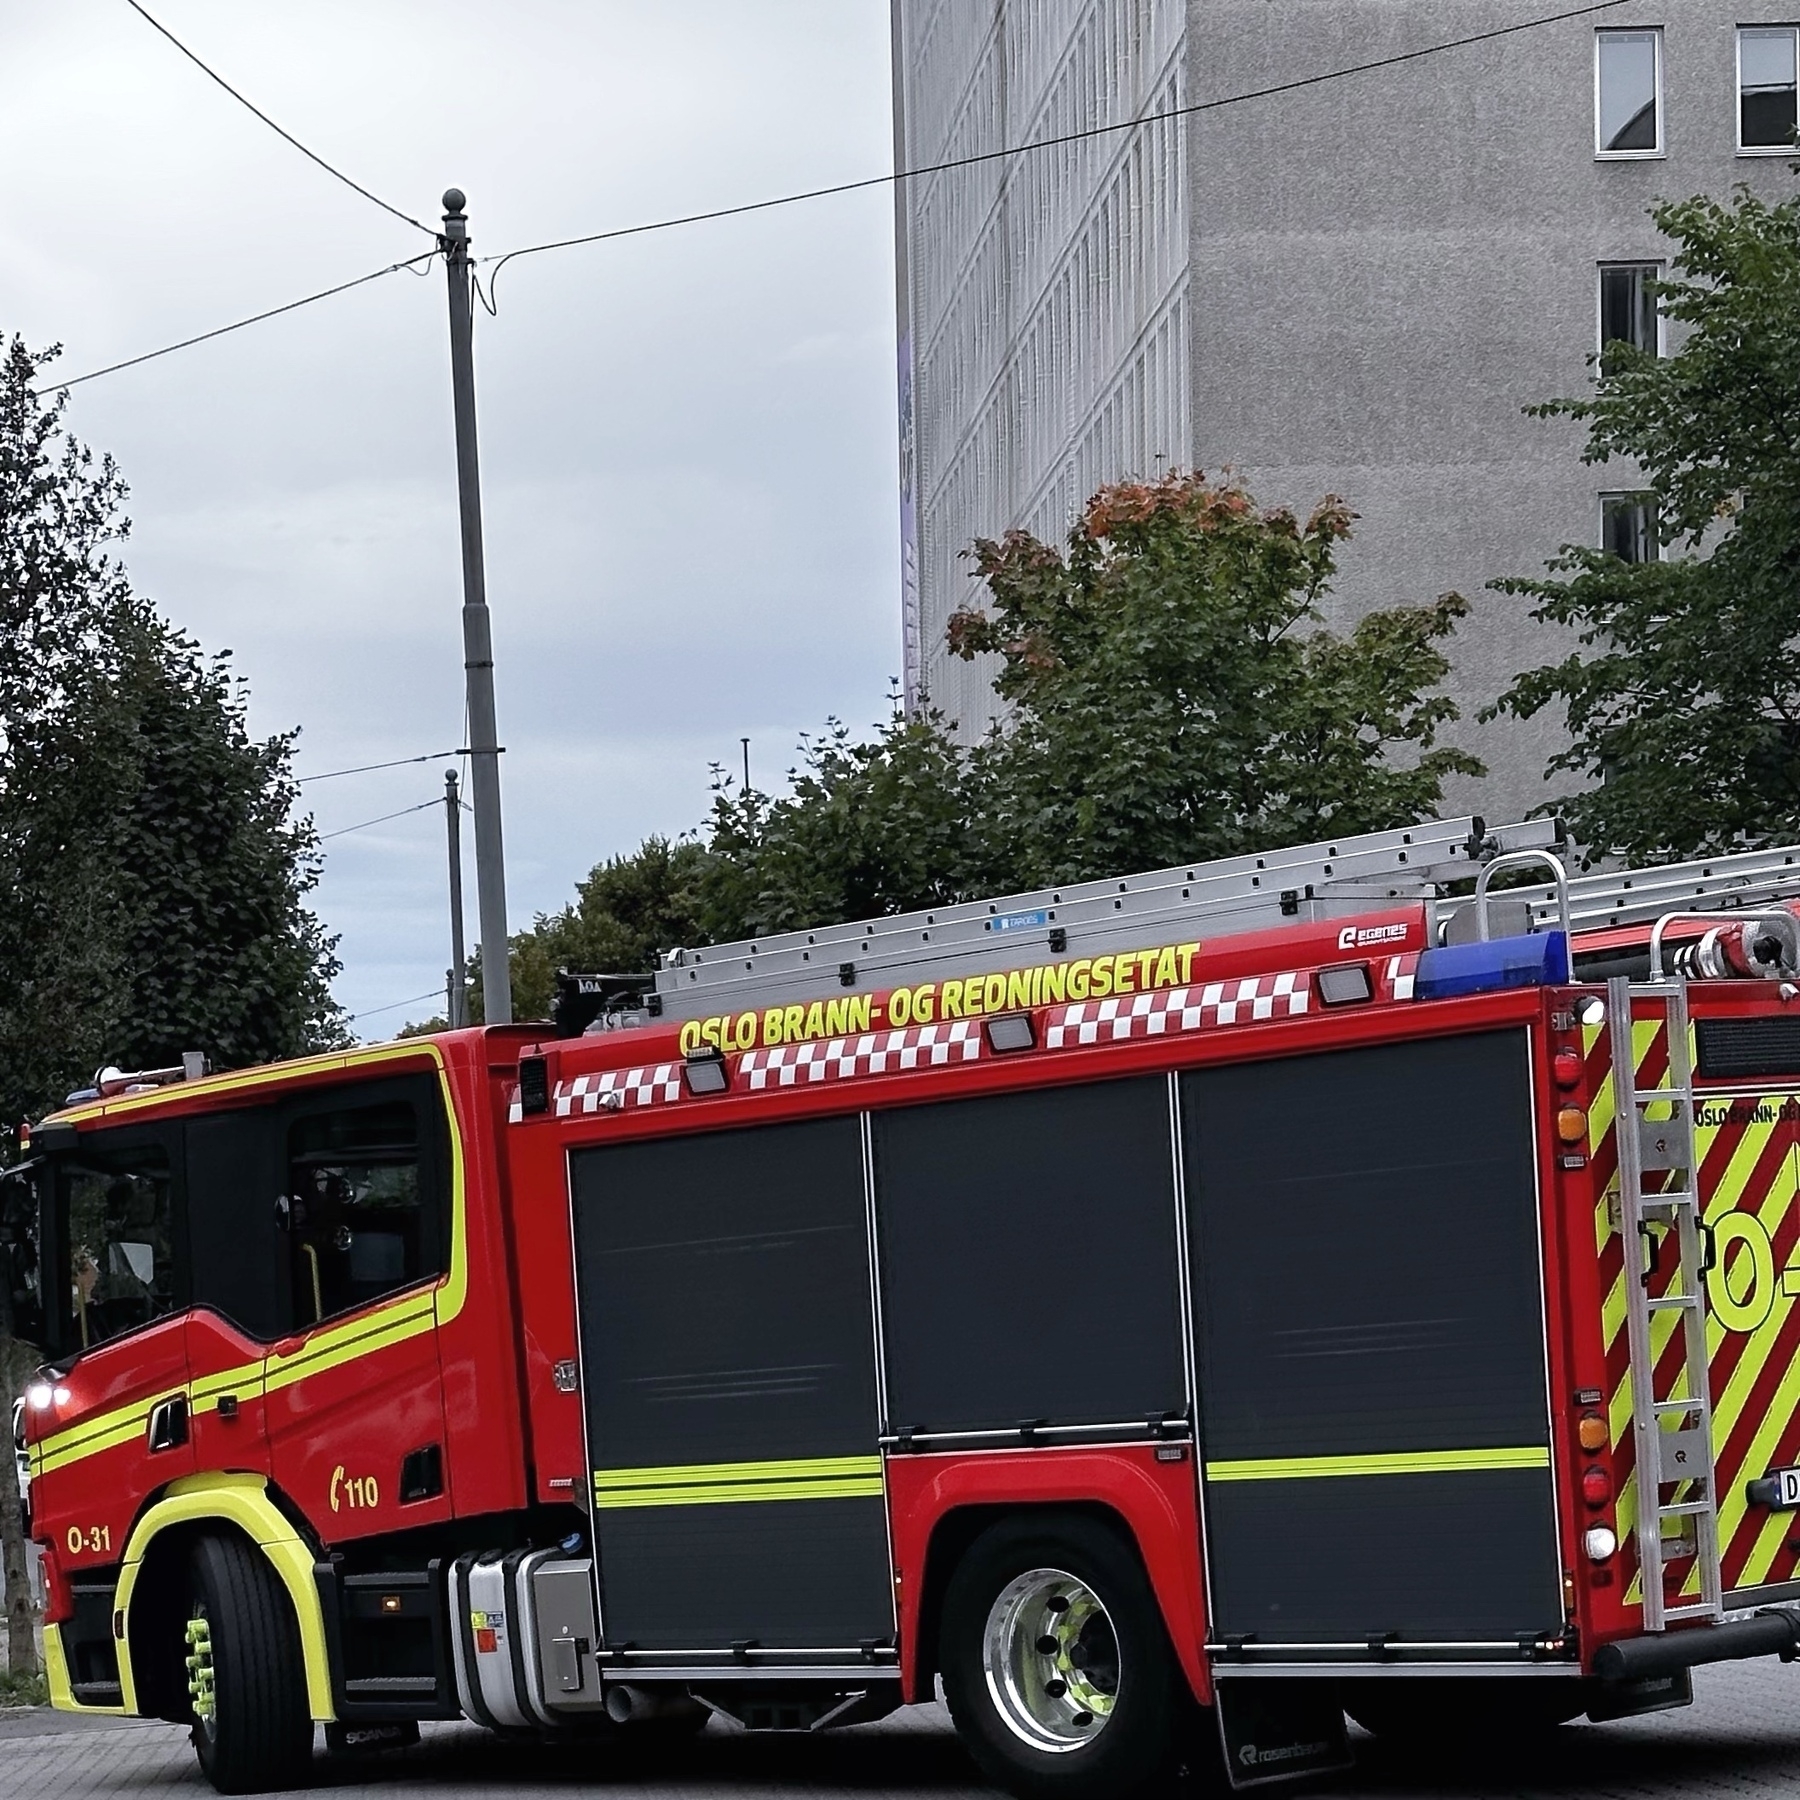 Fire engine from Oslo Brannvesen